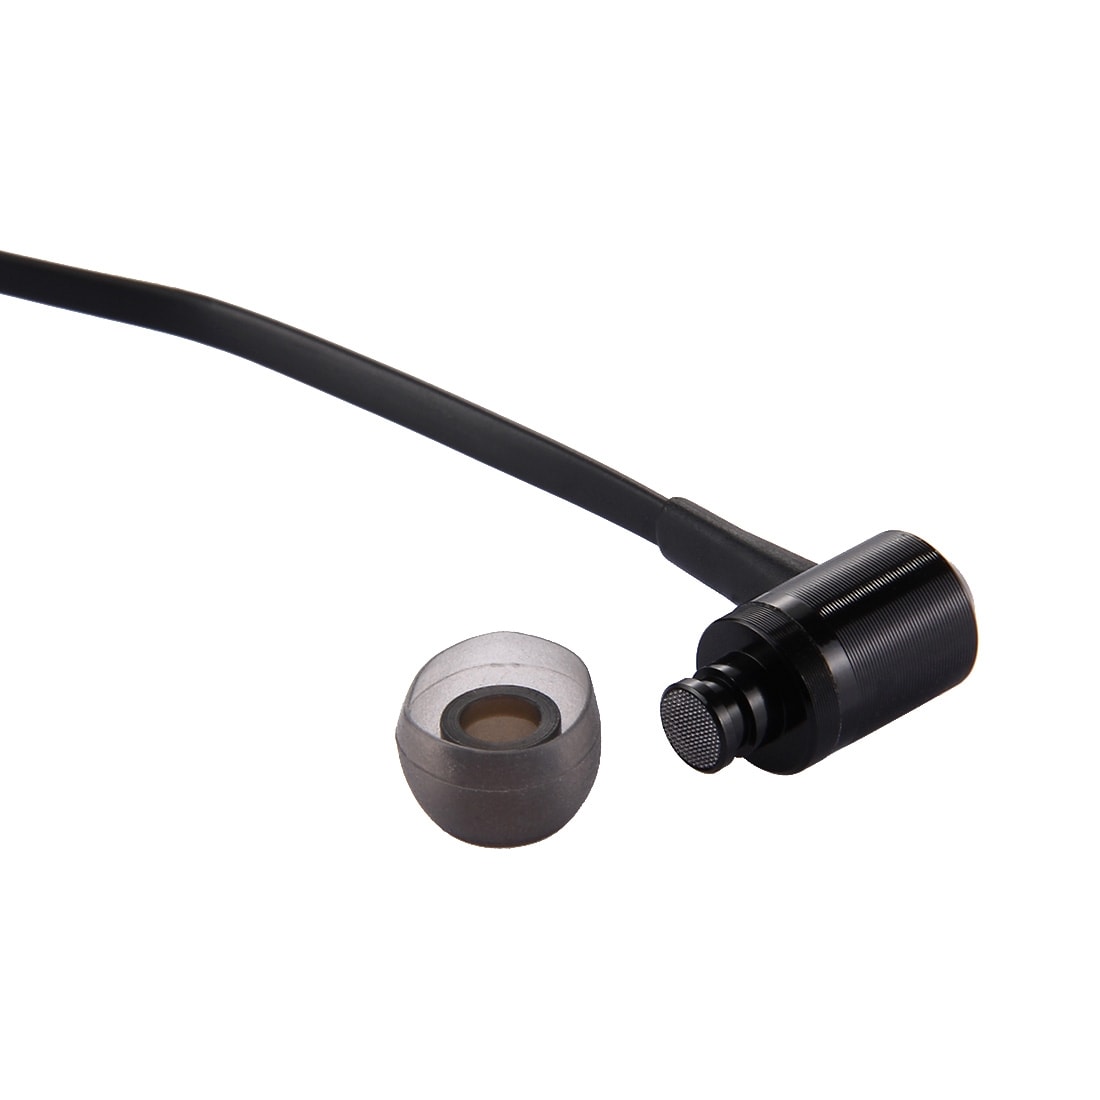 Sorte Trådløse In-Ear høretelefoner med mikrofon - Bluetooth